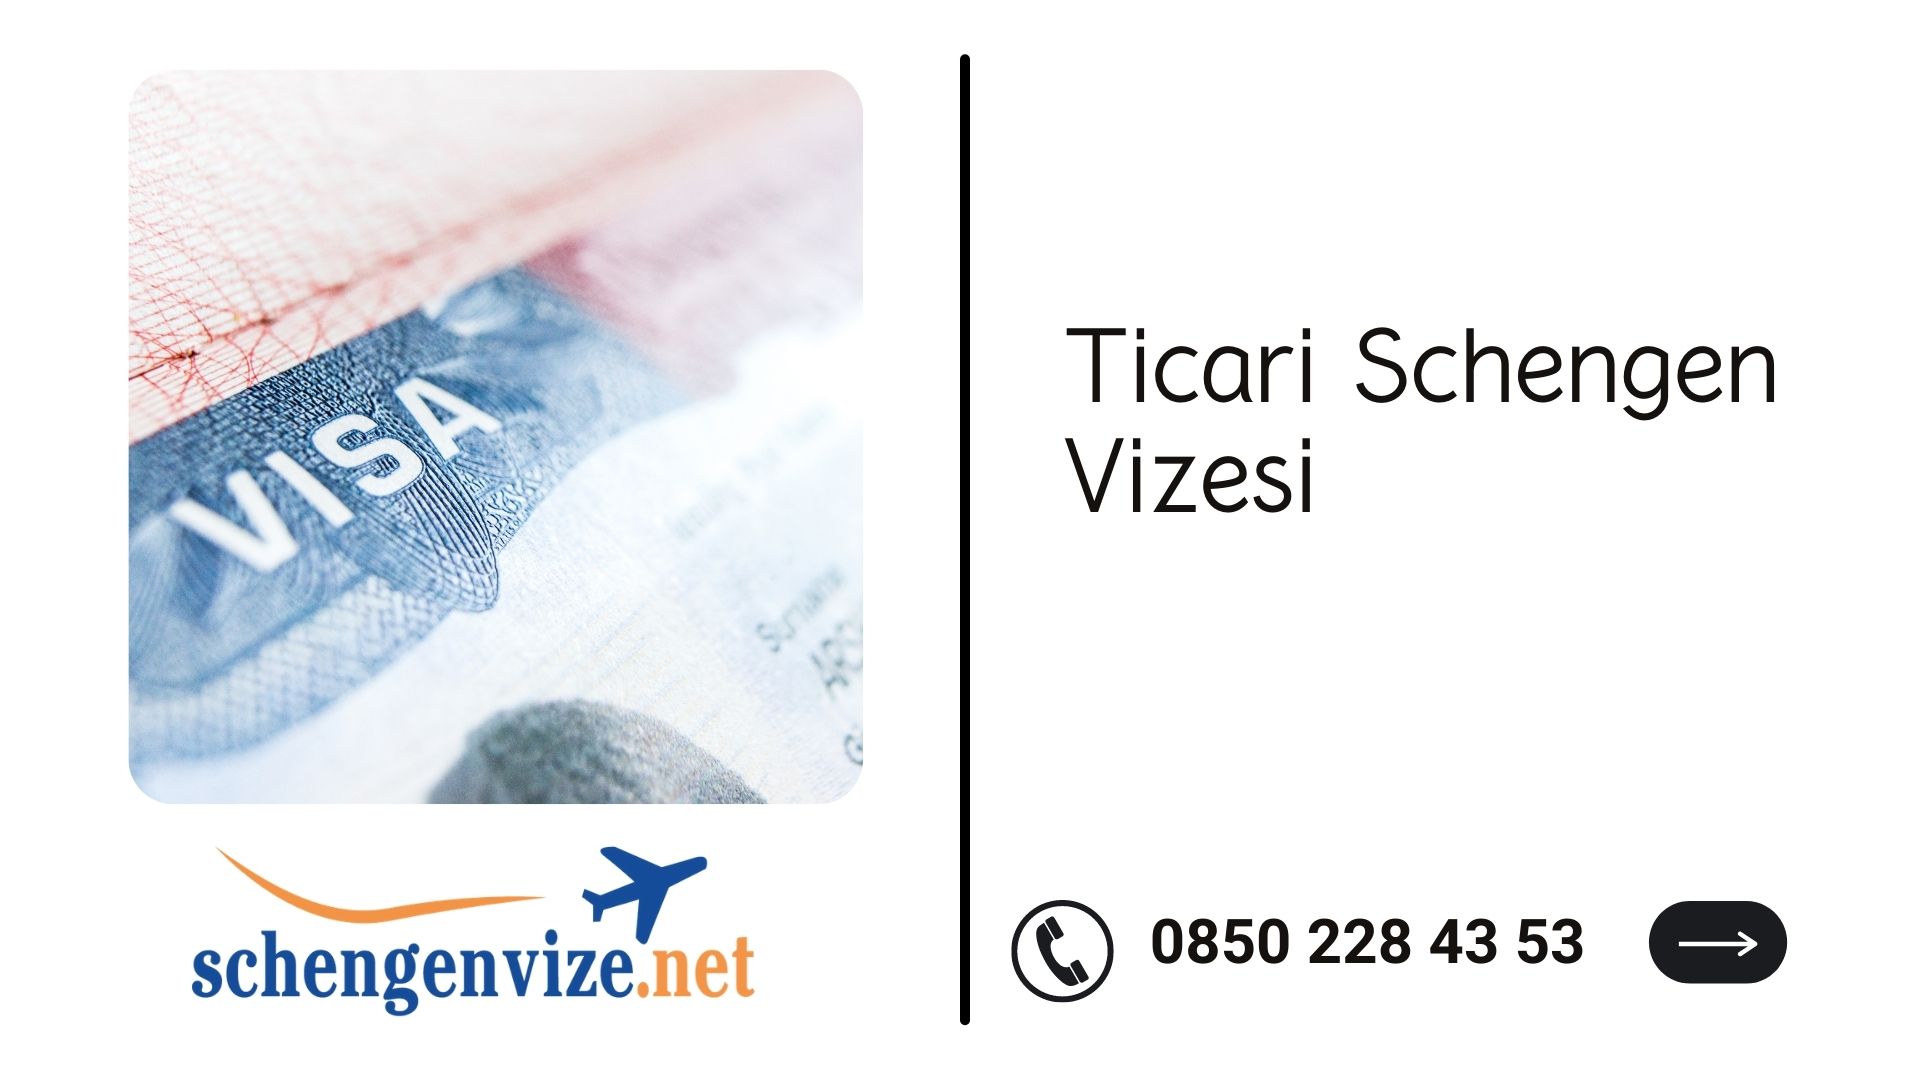 Ticari Schengen Vizesi